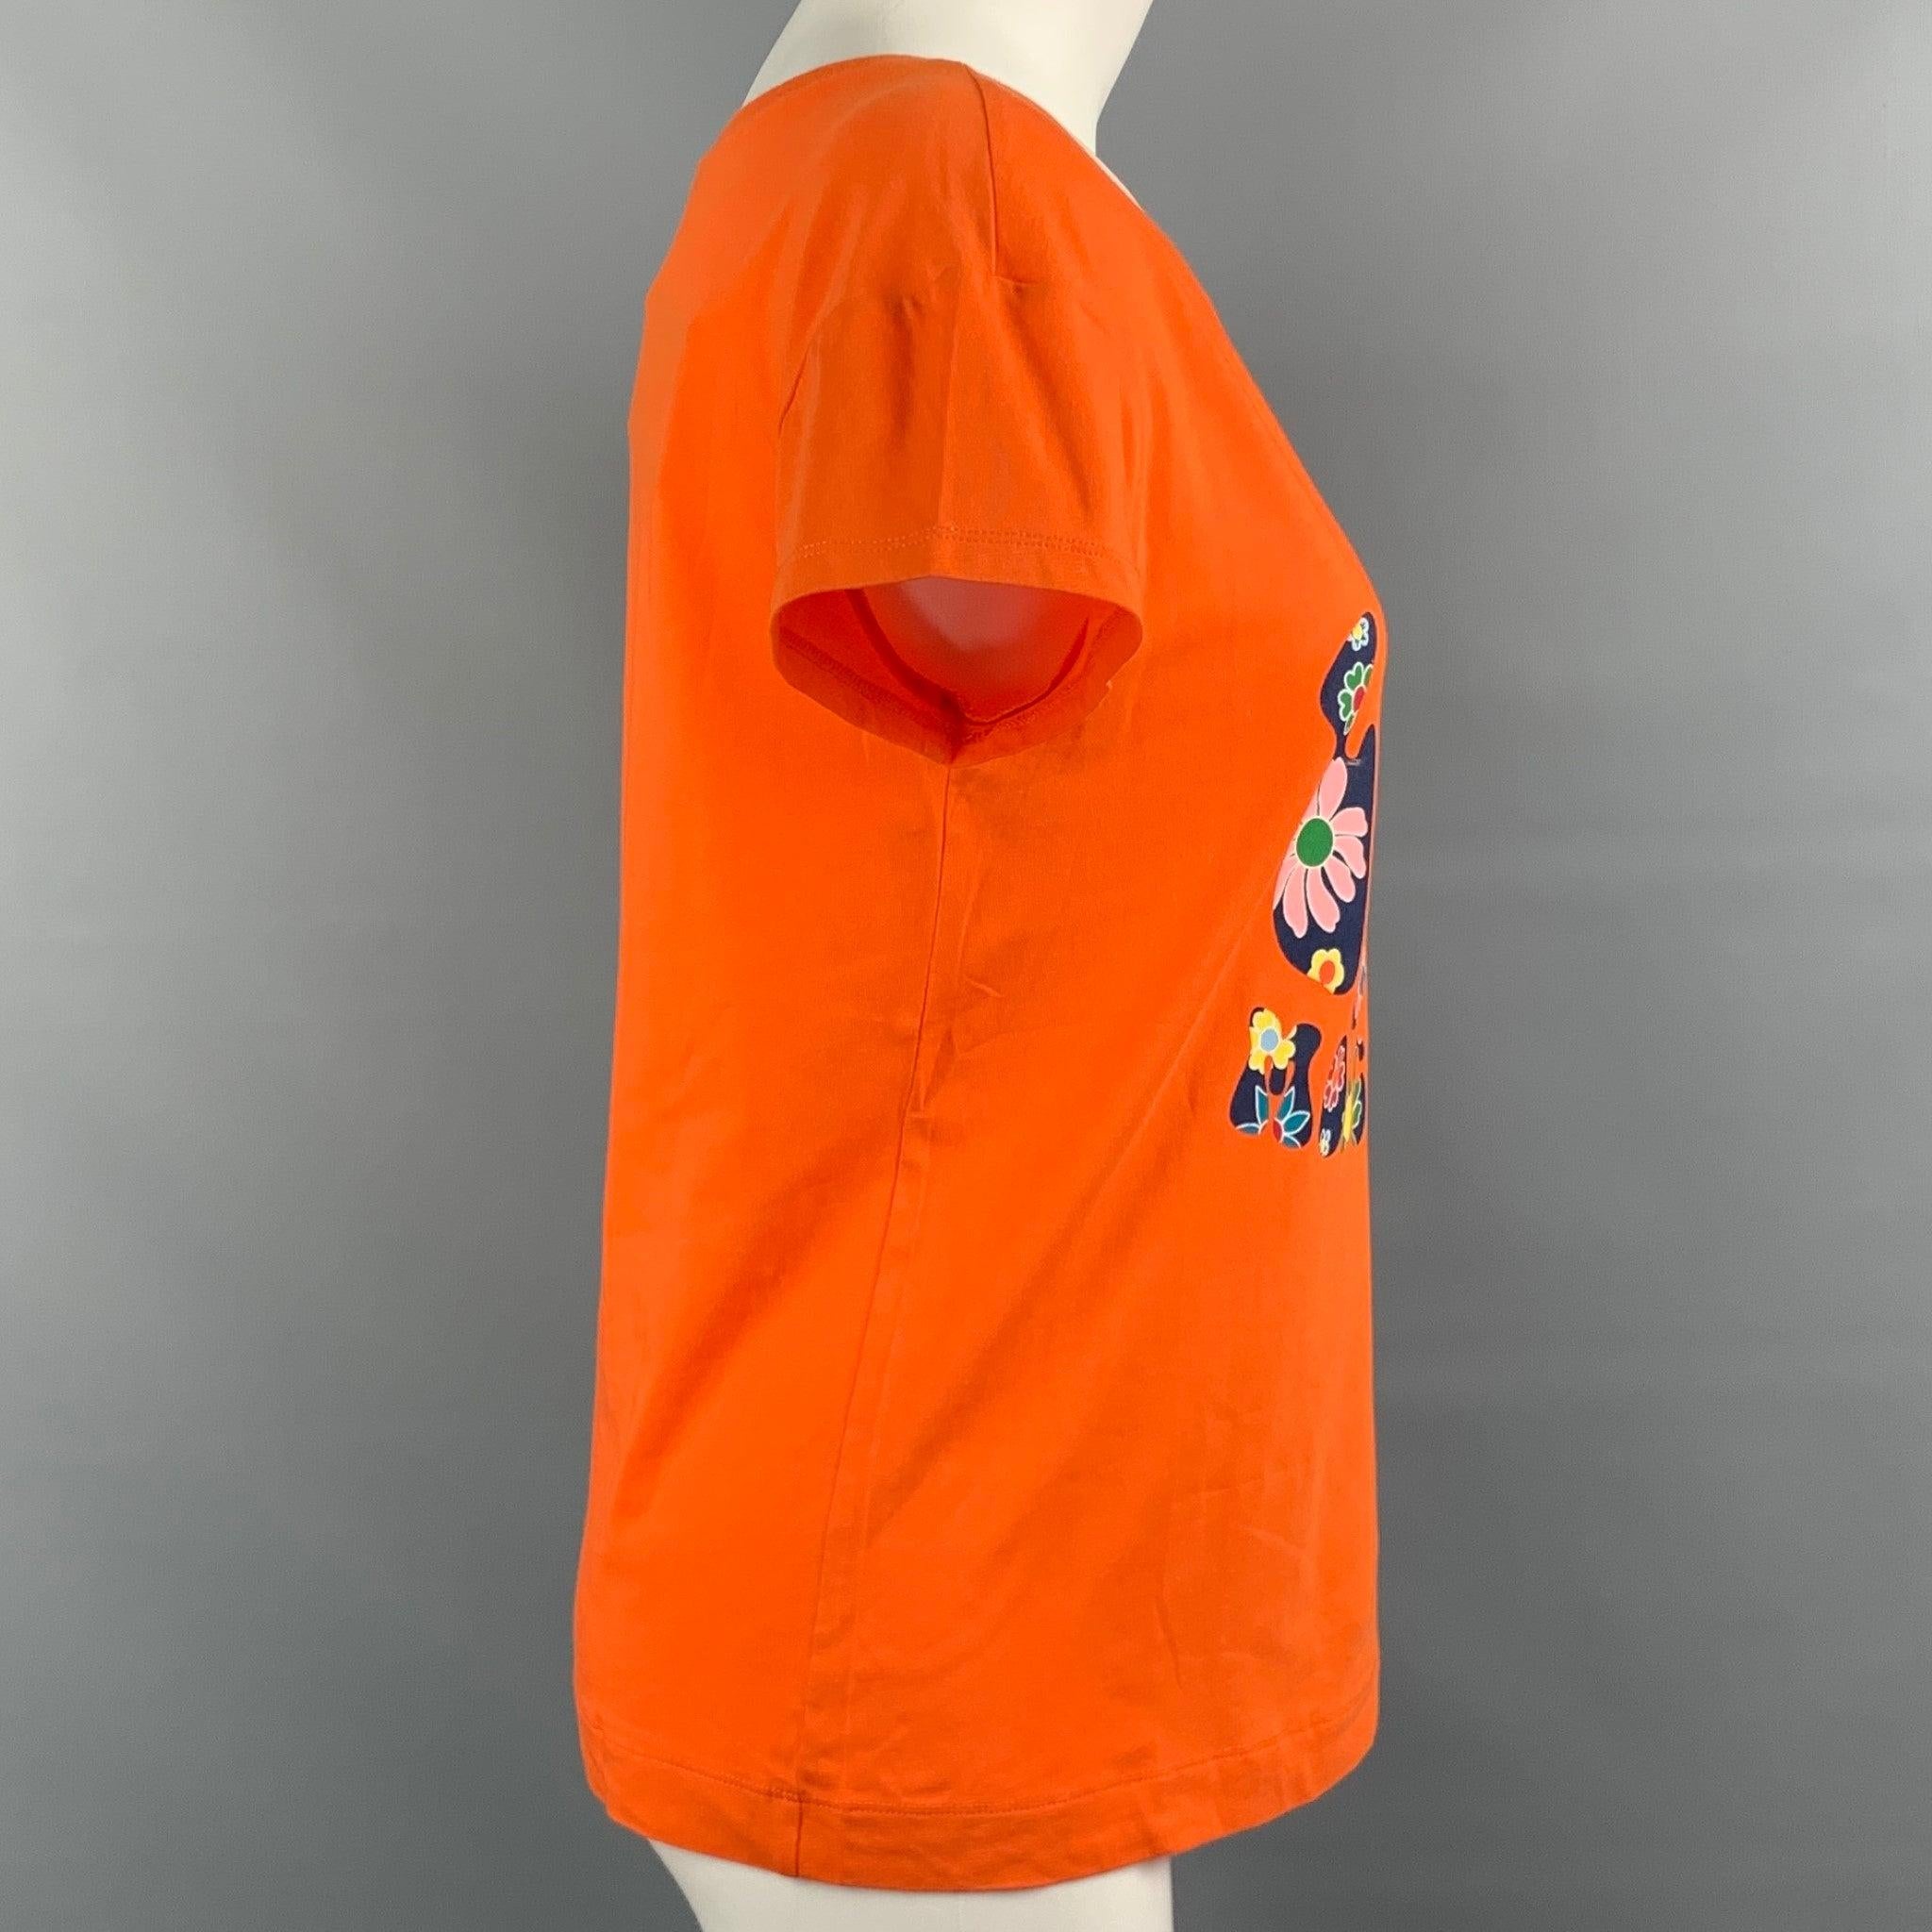 LOVE MOSCHINO T-Shirt aus orangefarbener Baumwolle mit mehrfarbigem Blumendruck und Logo-Grafik und Bootsausschnitt. 
Neu mit Tags.
 

Markiert:   D 36 / GB 8 / F 36 / USA 4 / I 40 

Abmessungen: 
 
Schultern: 19 Zoll  Oberweite: 35 Zoll  Ärmel: 4